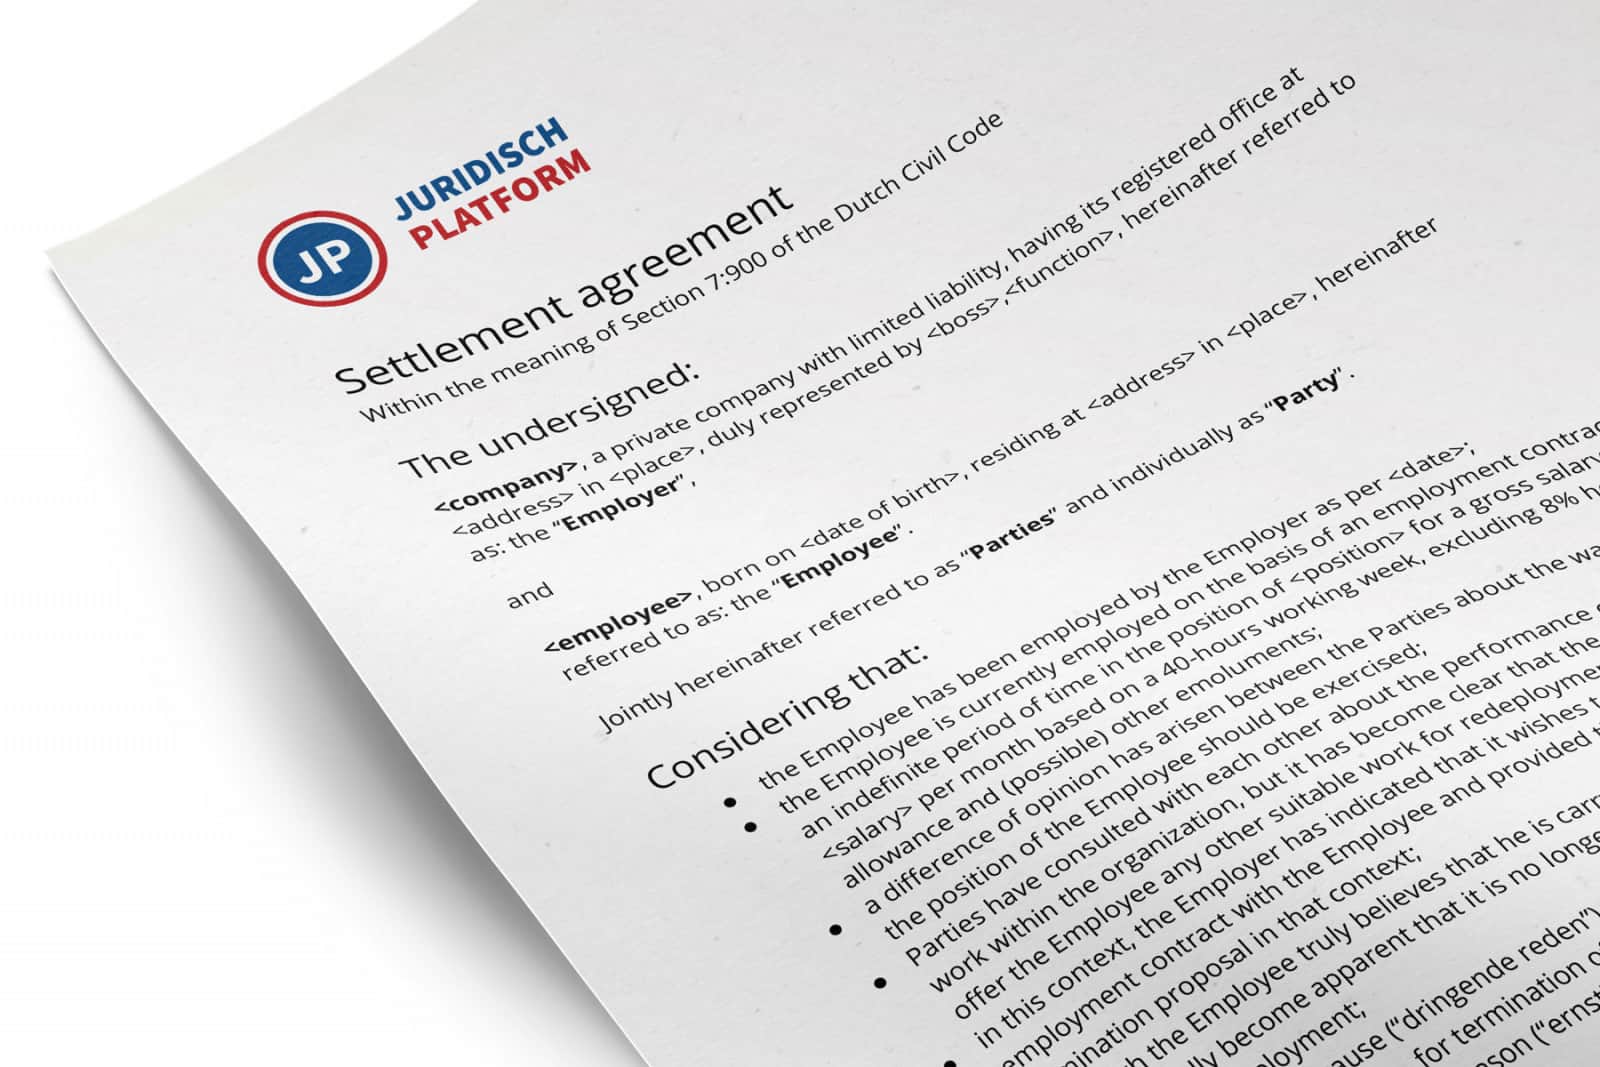 Settlement agreement dismissal